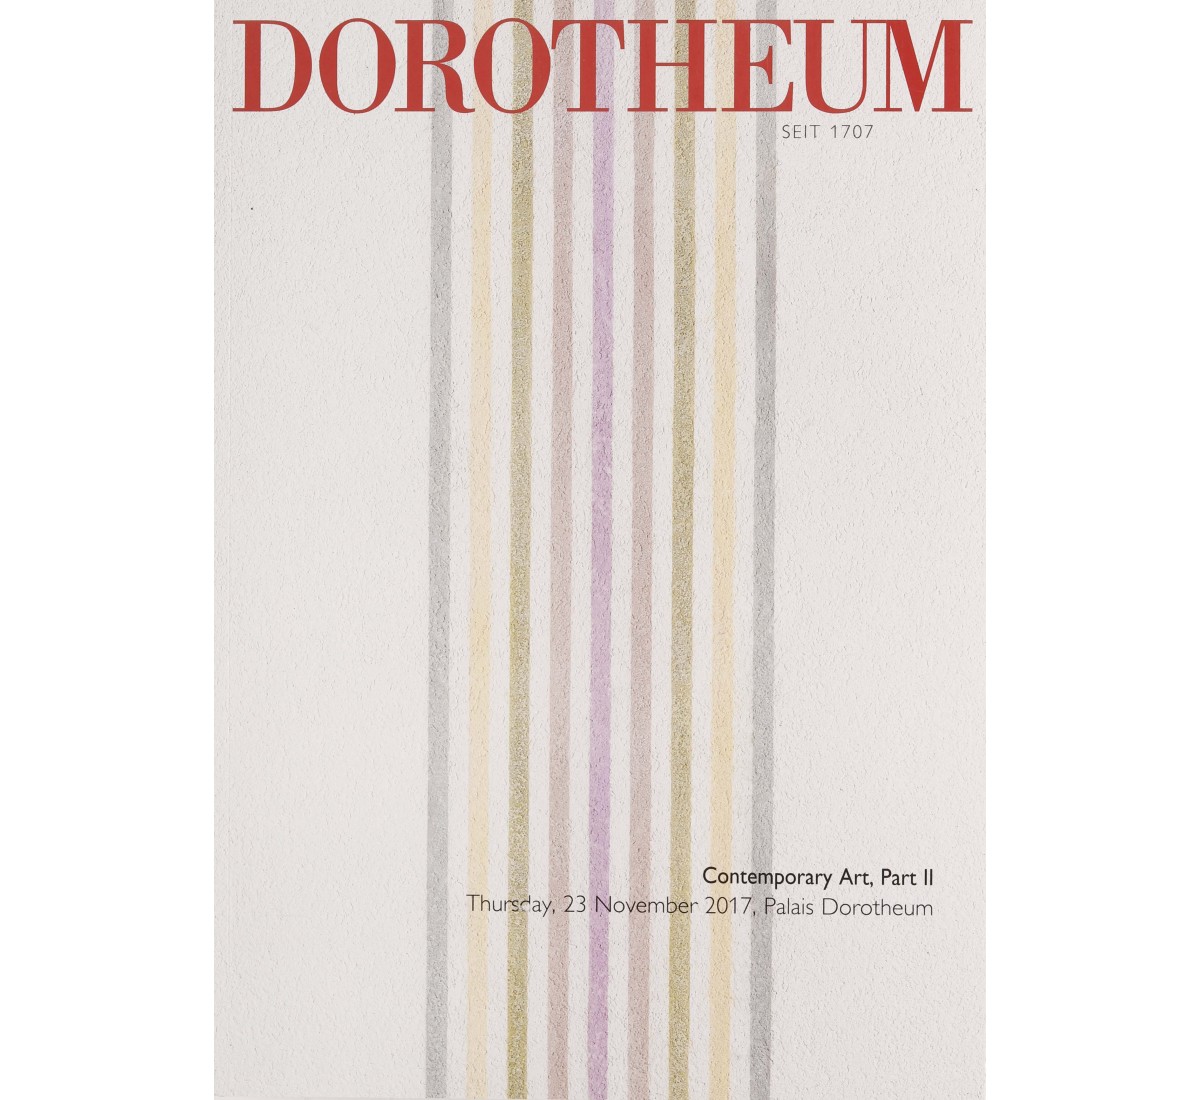 DOROTHEUM, CONTEMPORARY ART